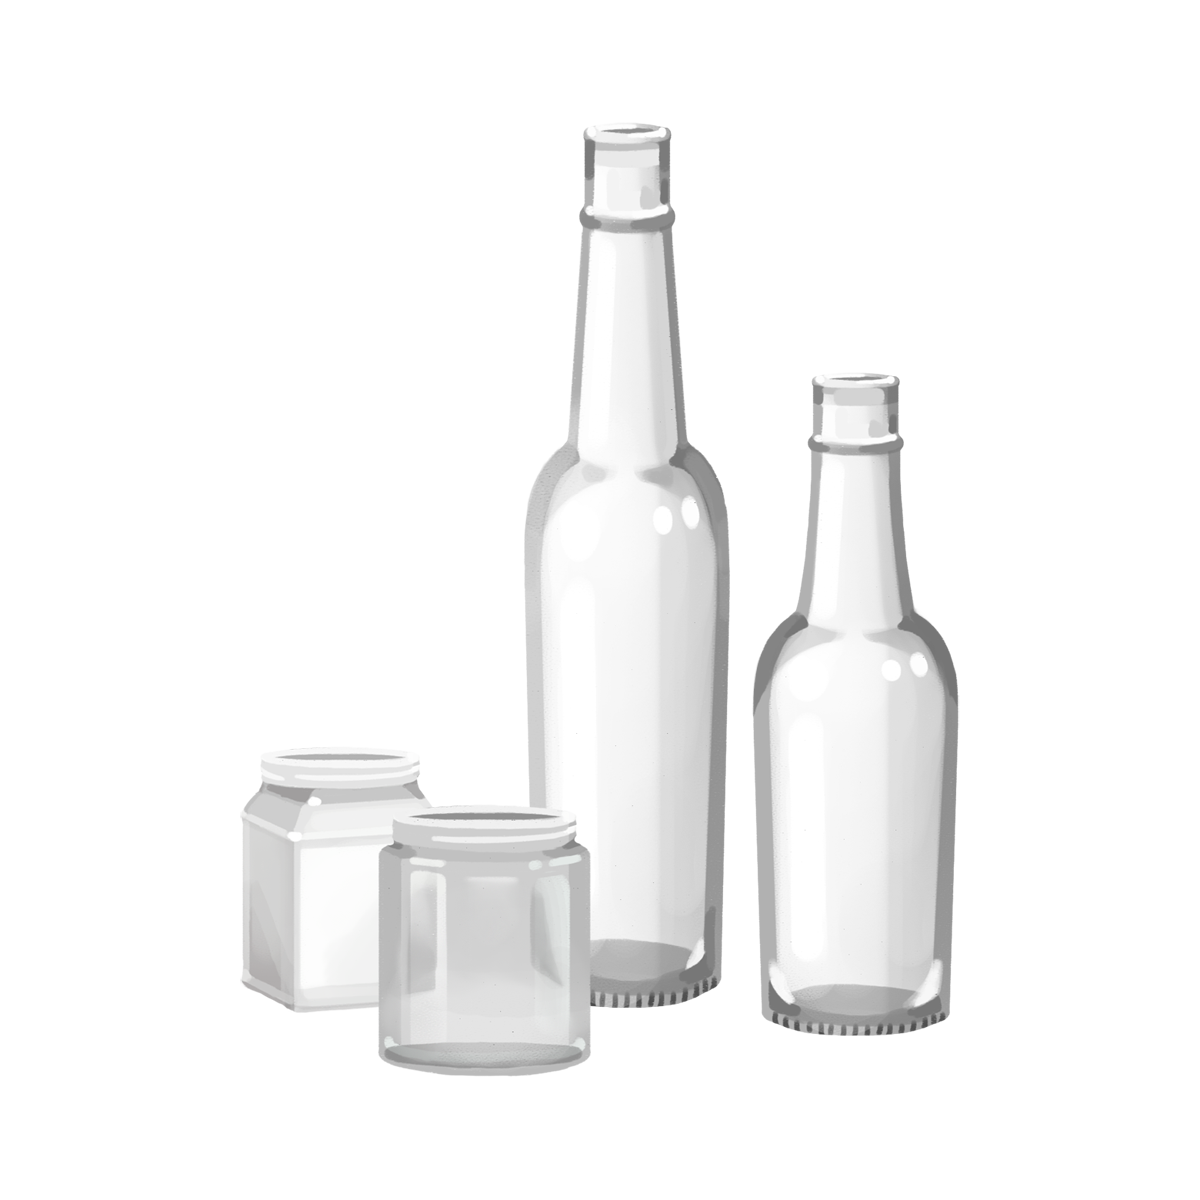 透明な空き瓶の商用フリーな無料イラスト ガラス